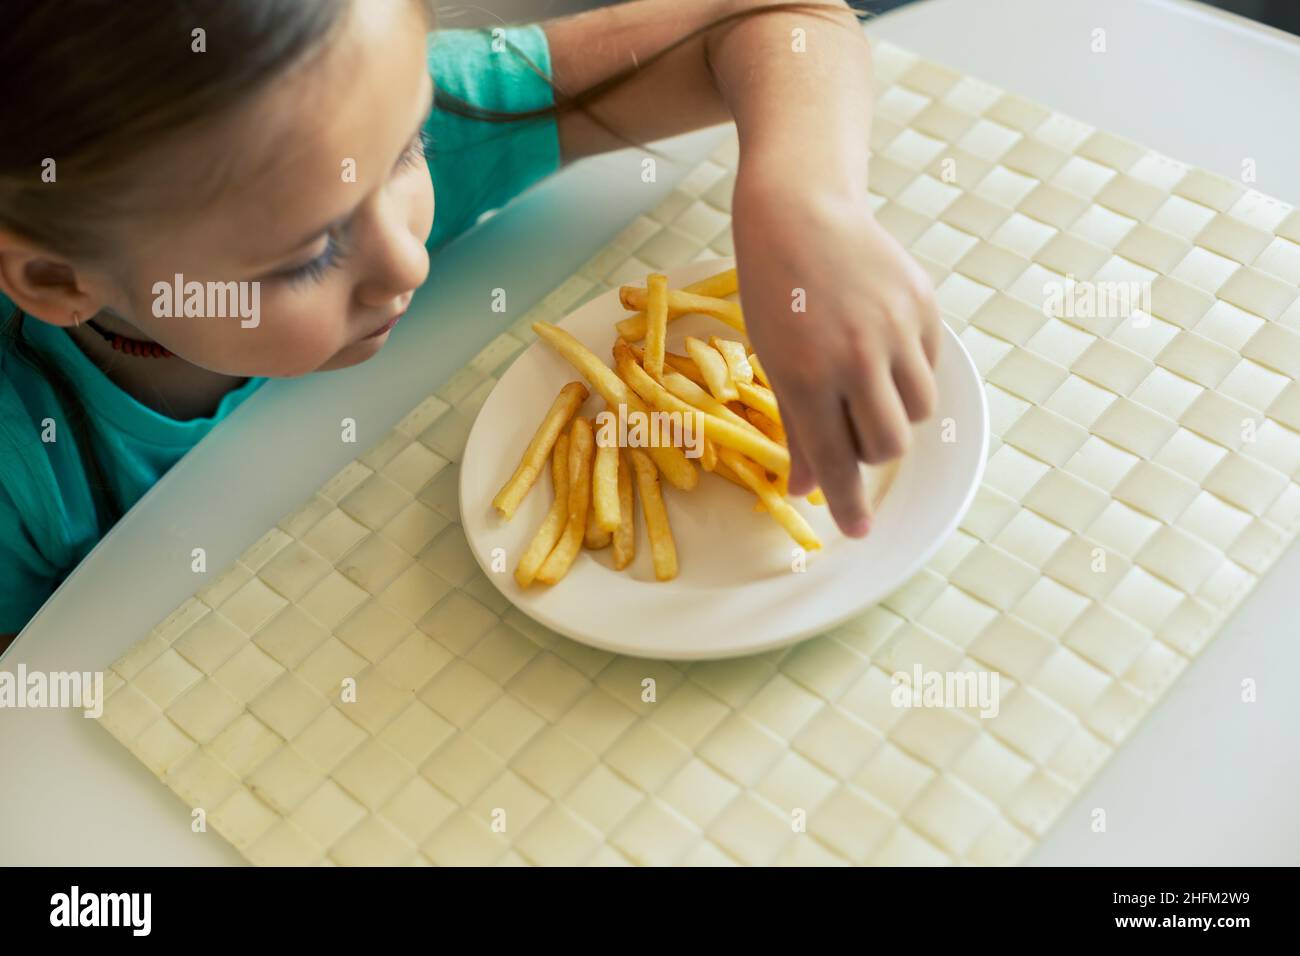 Gros plan d'une petite fille mangeant des frites dans la cuisine Banque D'Images